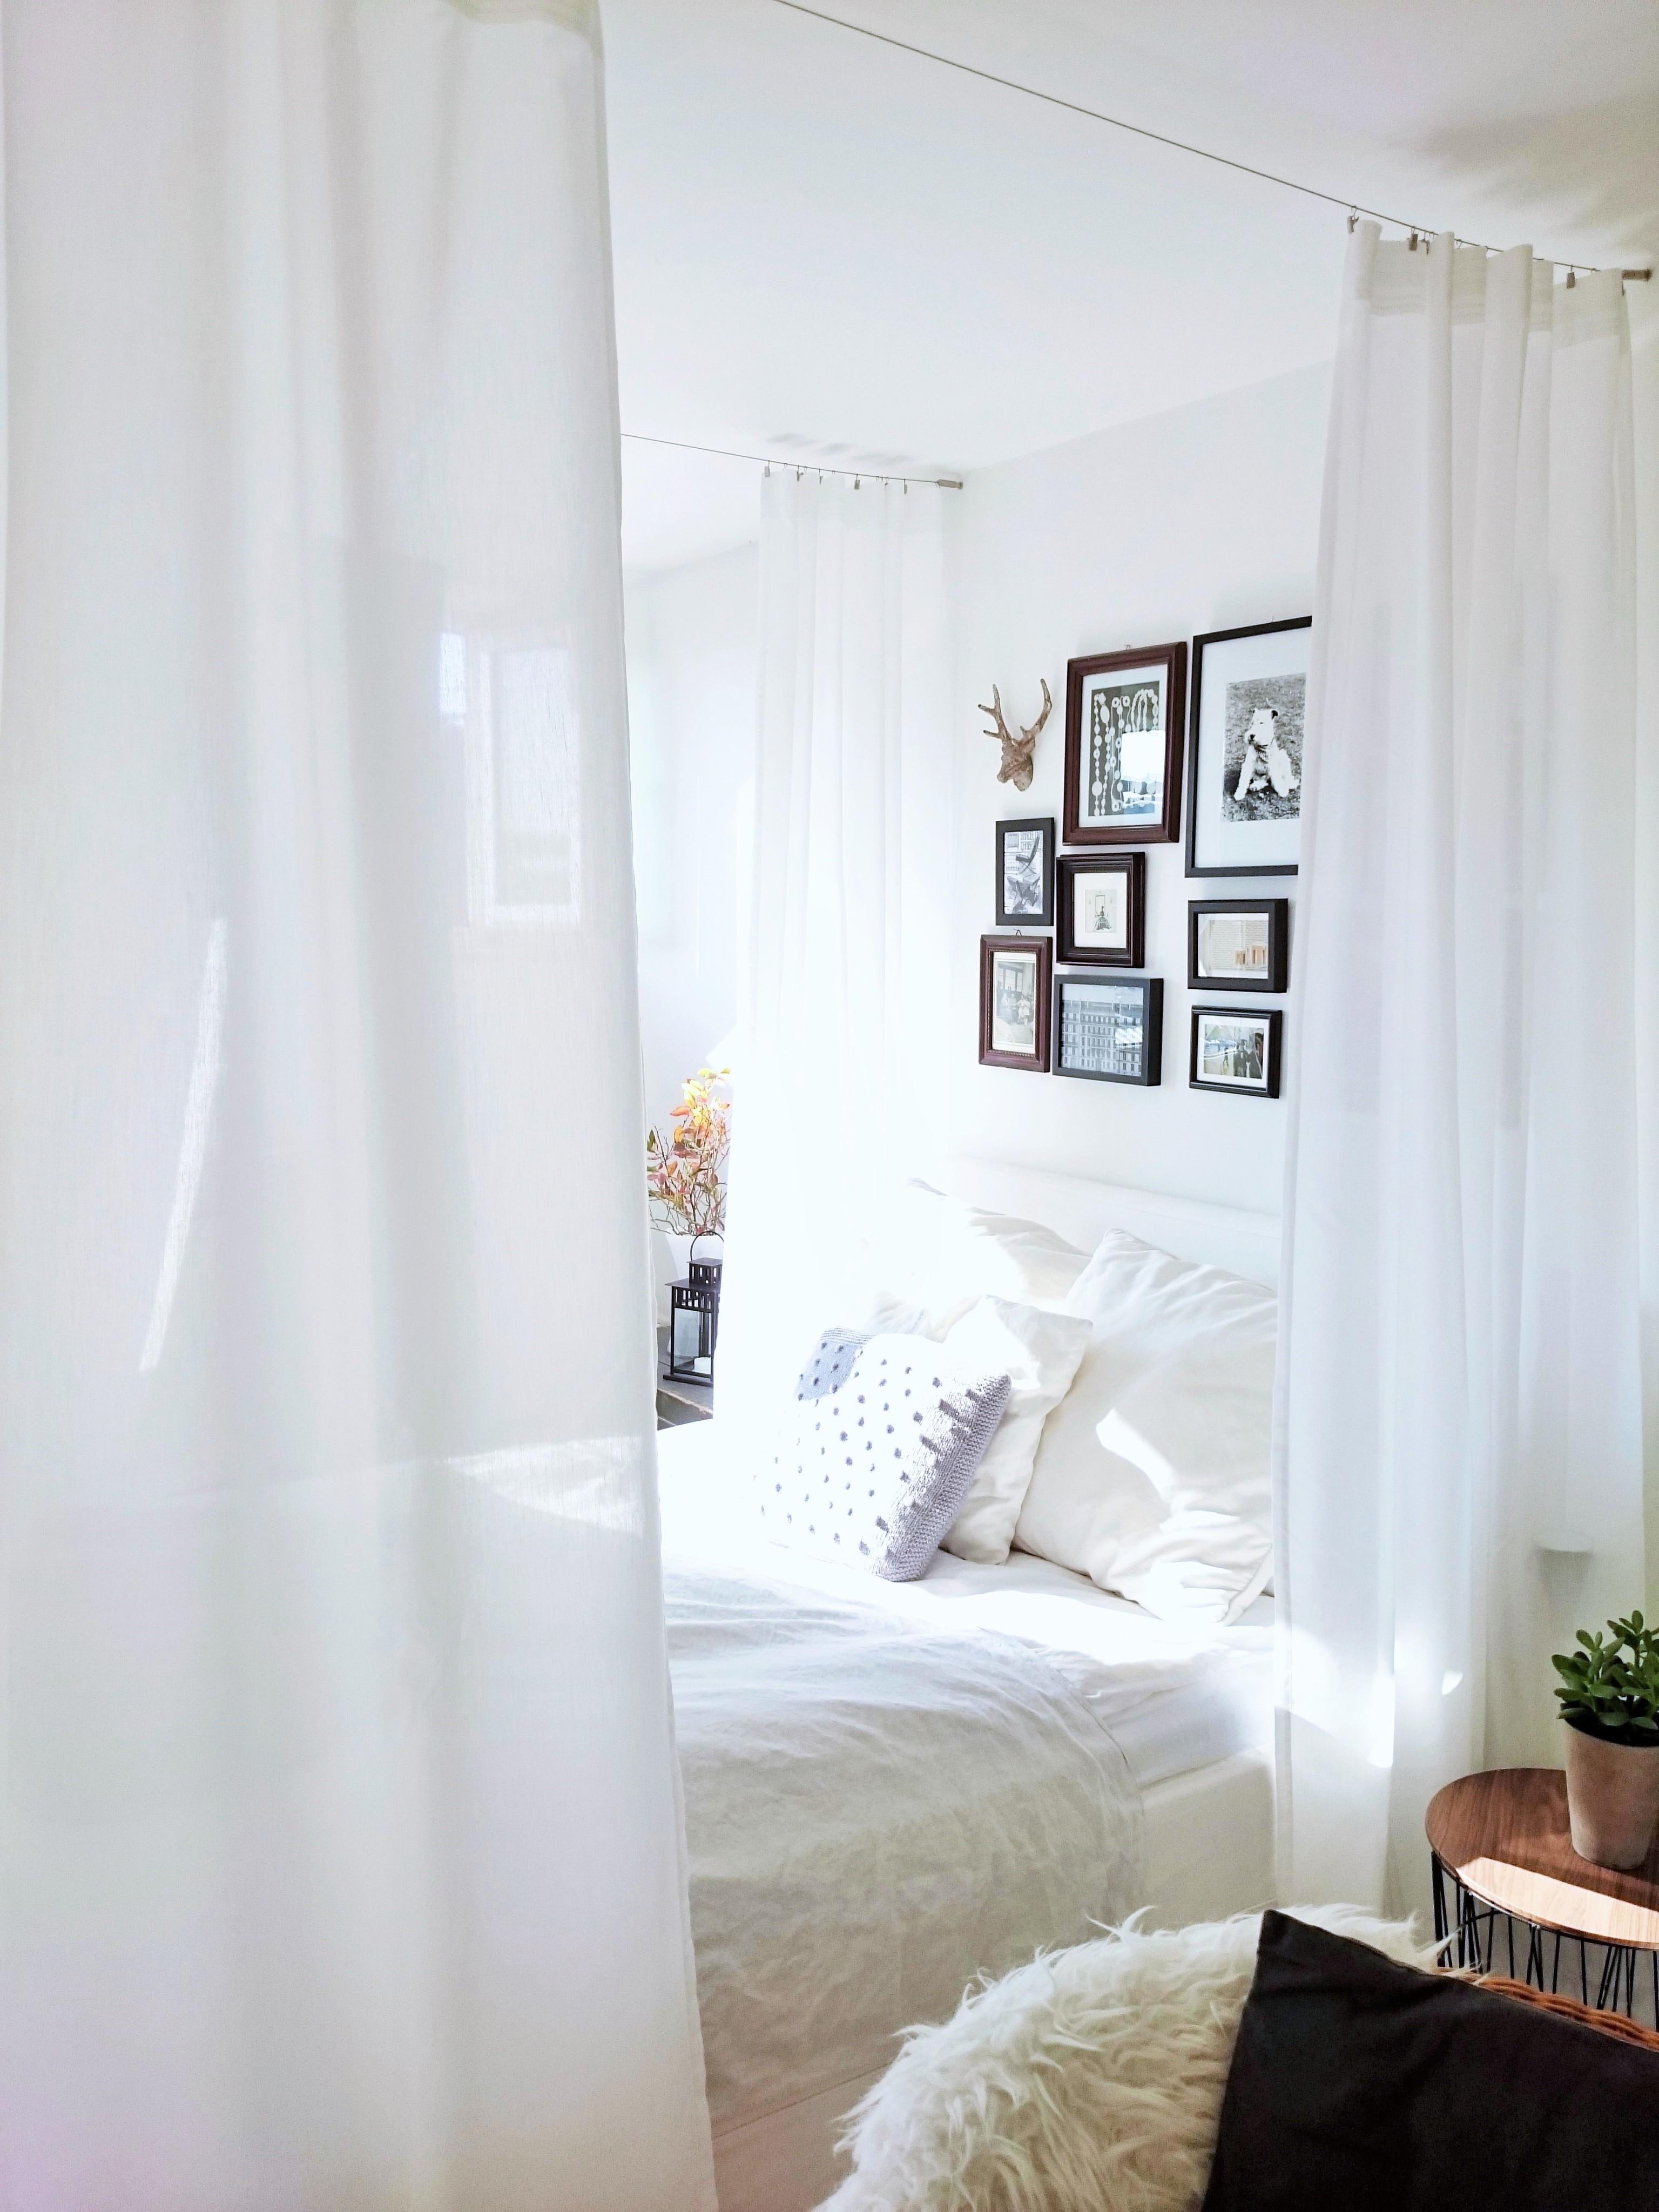 DIY-Himmelbett
#canopybed #Himmelbett #Einzimmerwohnung #bedroom #couchstyle